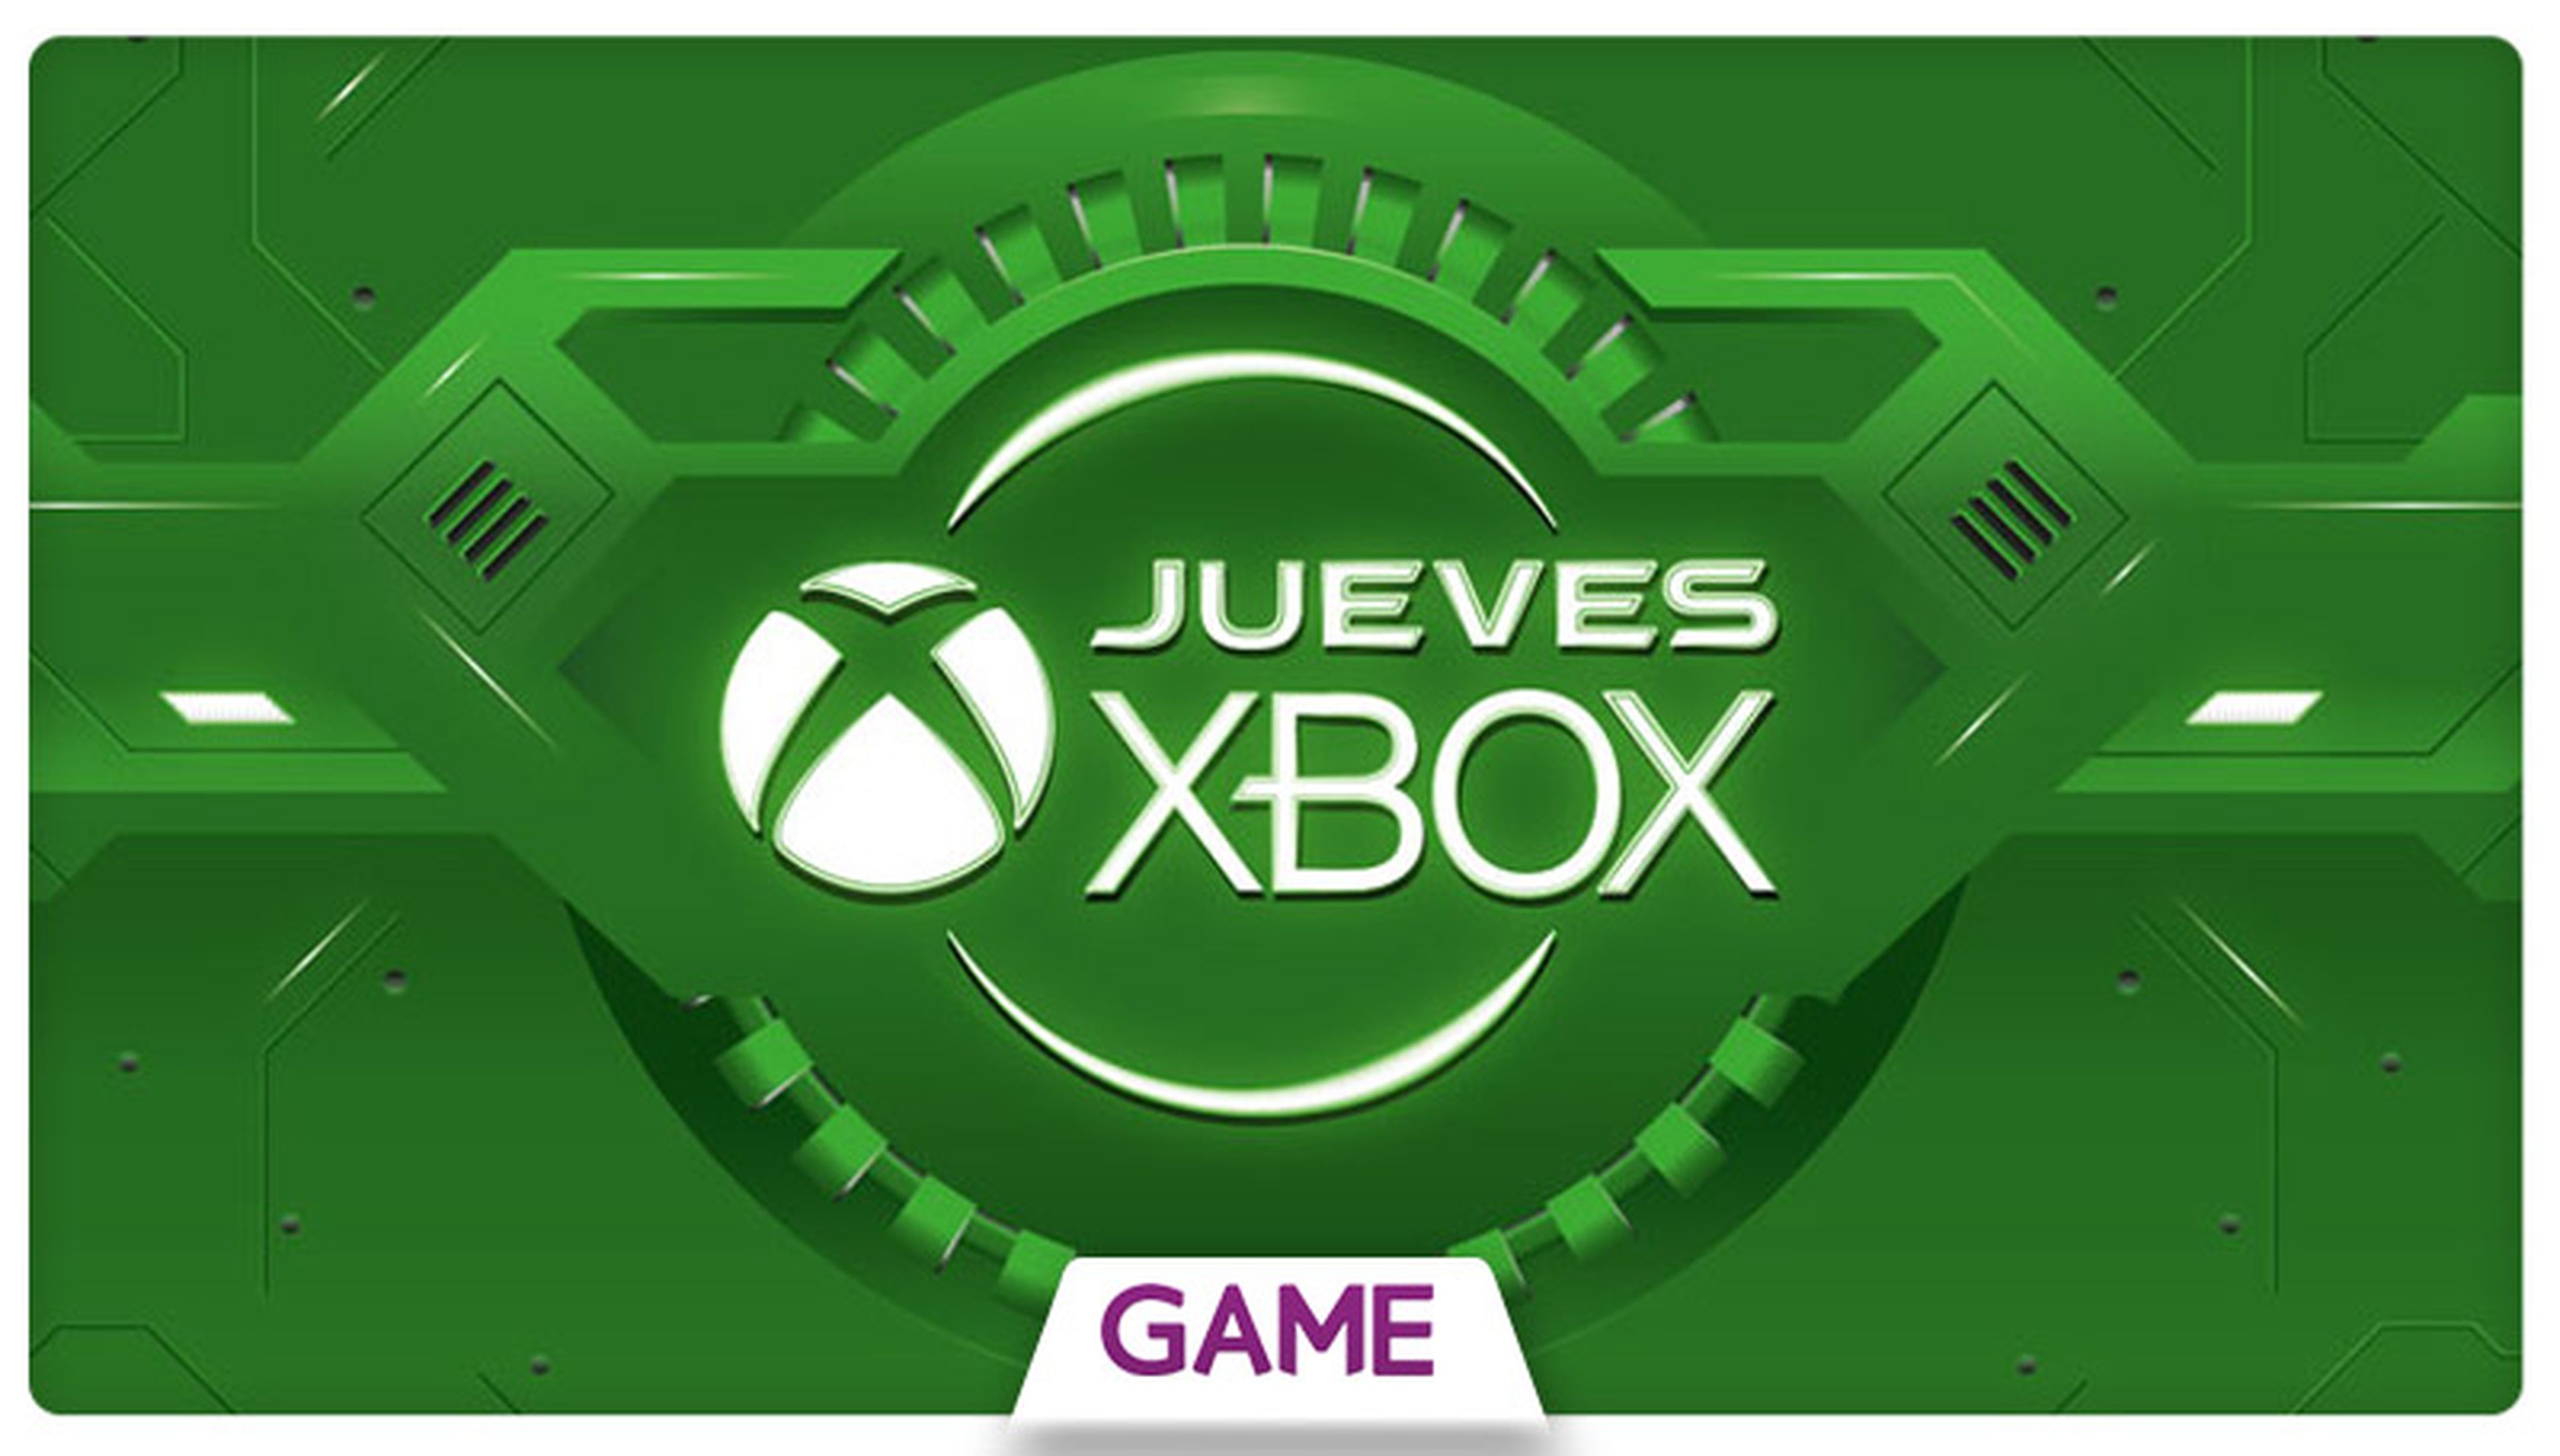 Jueves Xbox en GAME: Ofertas del 22/10/2015